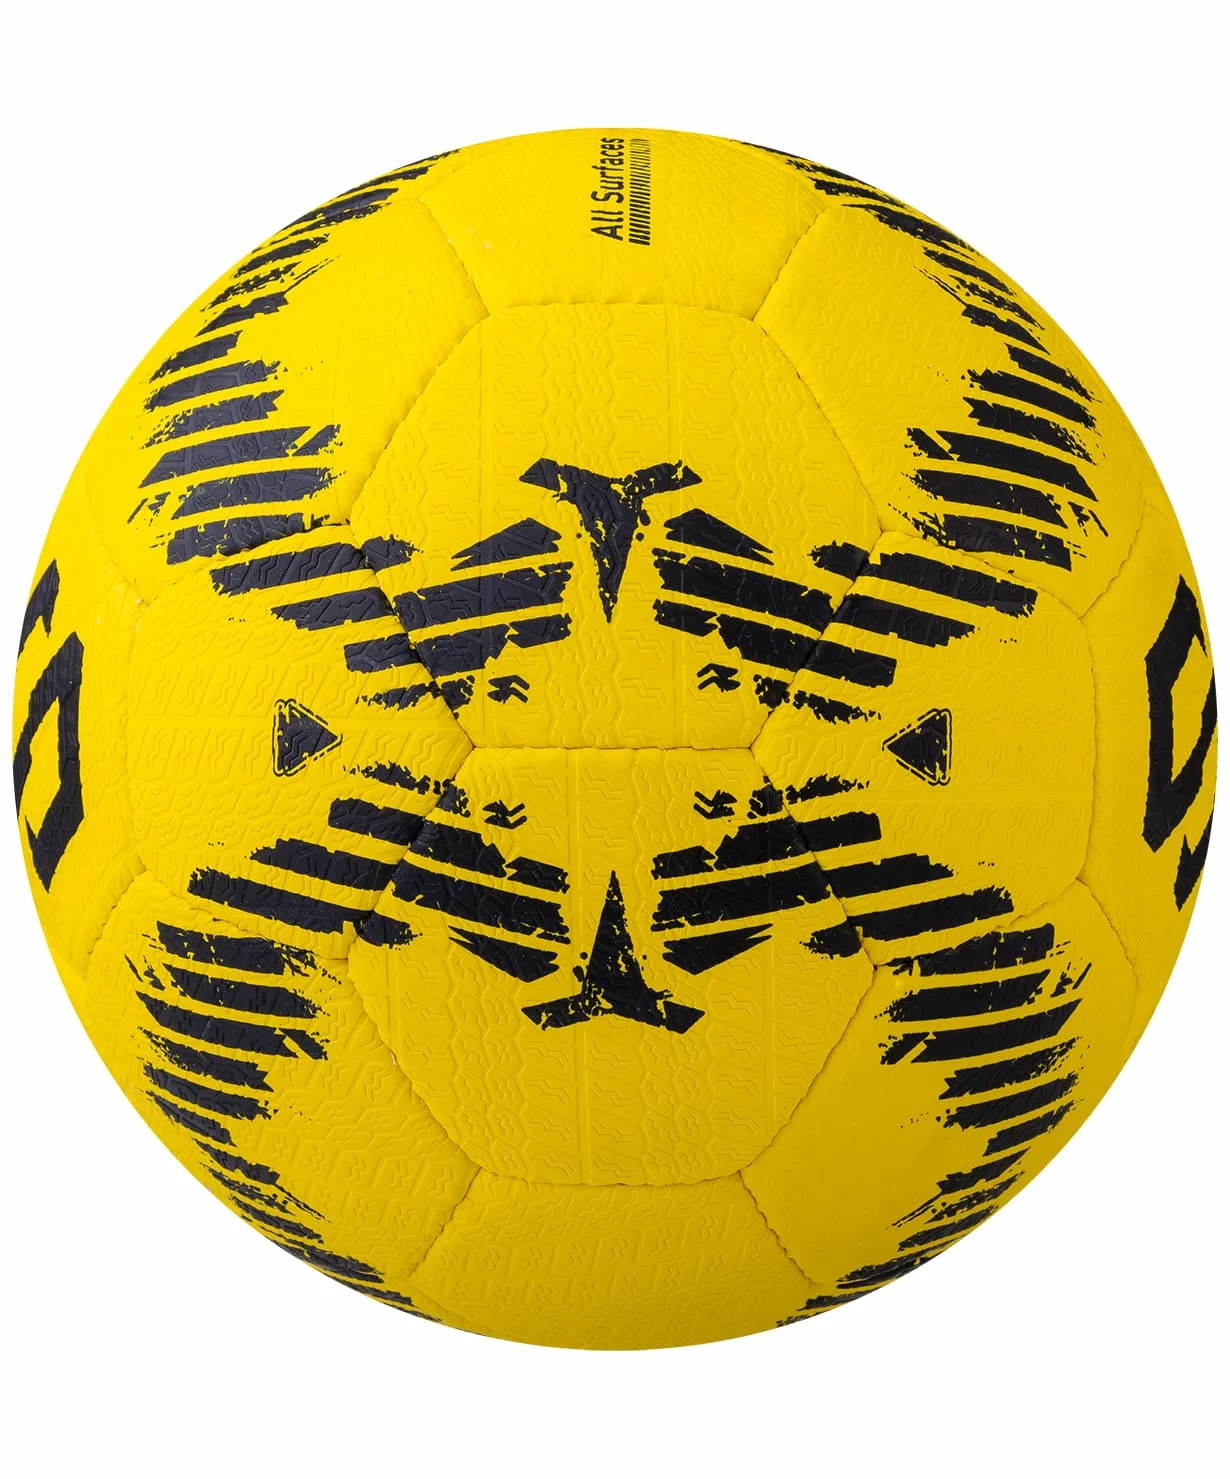 Реальное фото Мяч футбольный Jögel JS-1100 Urban №5 желтый 14246 от магазина СпортСЕ